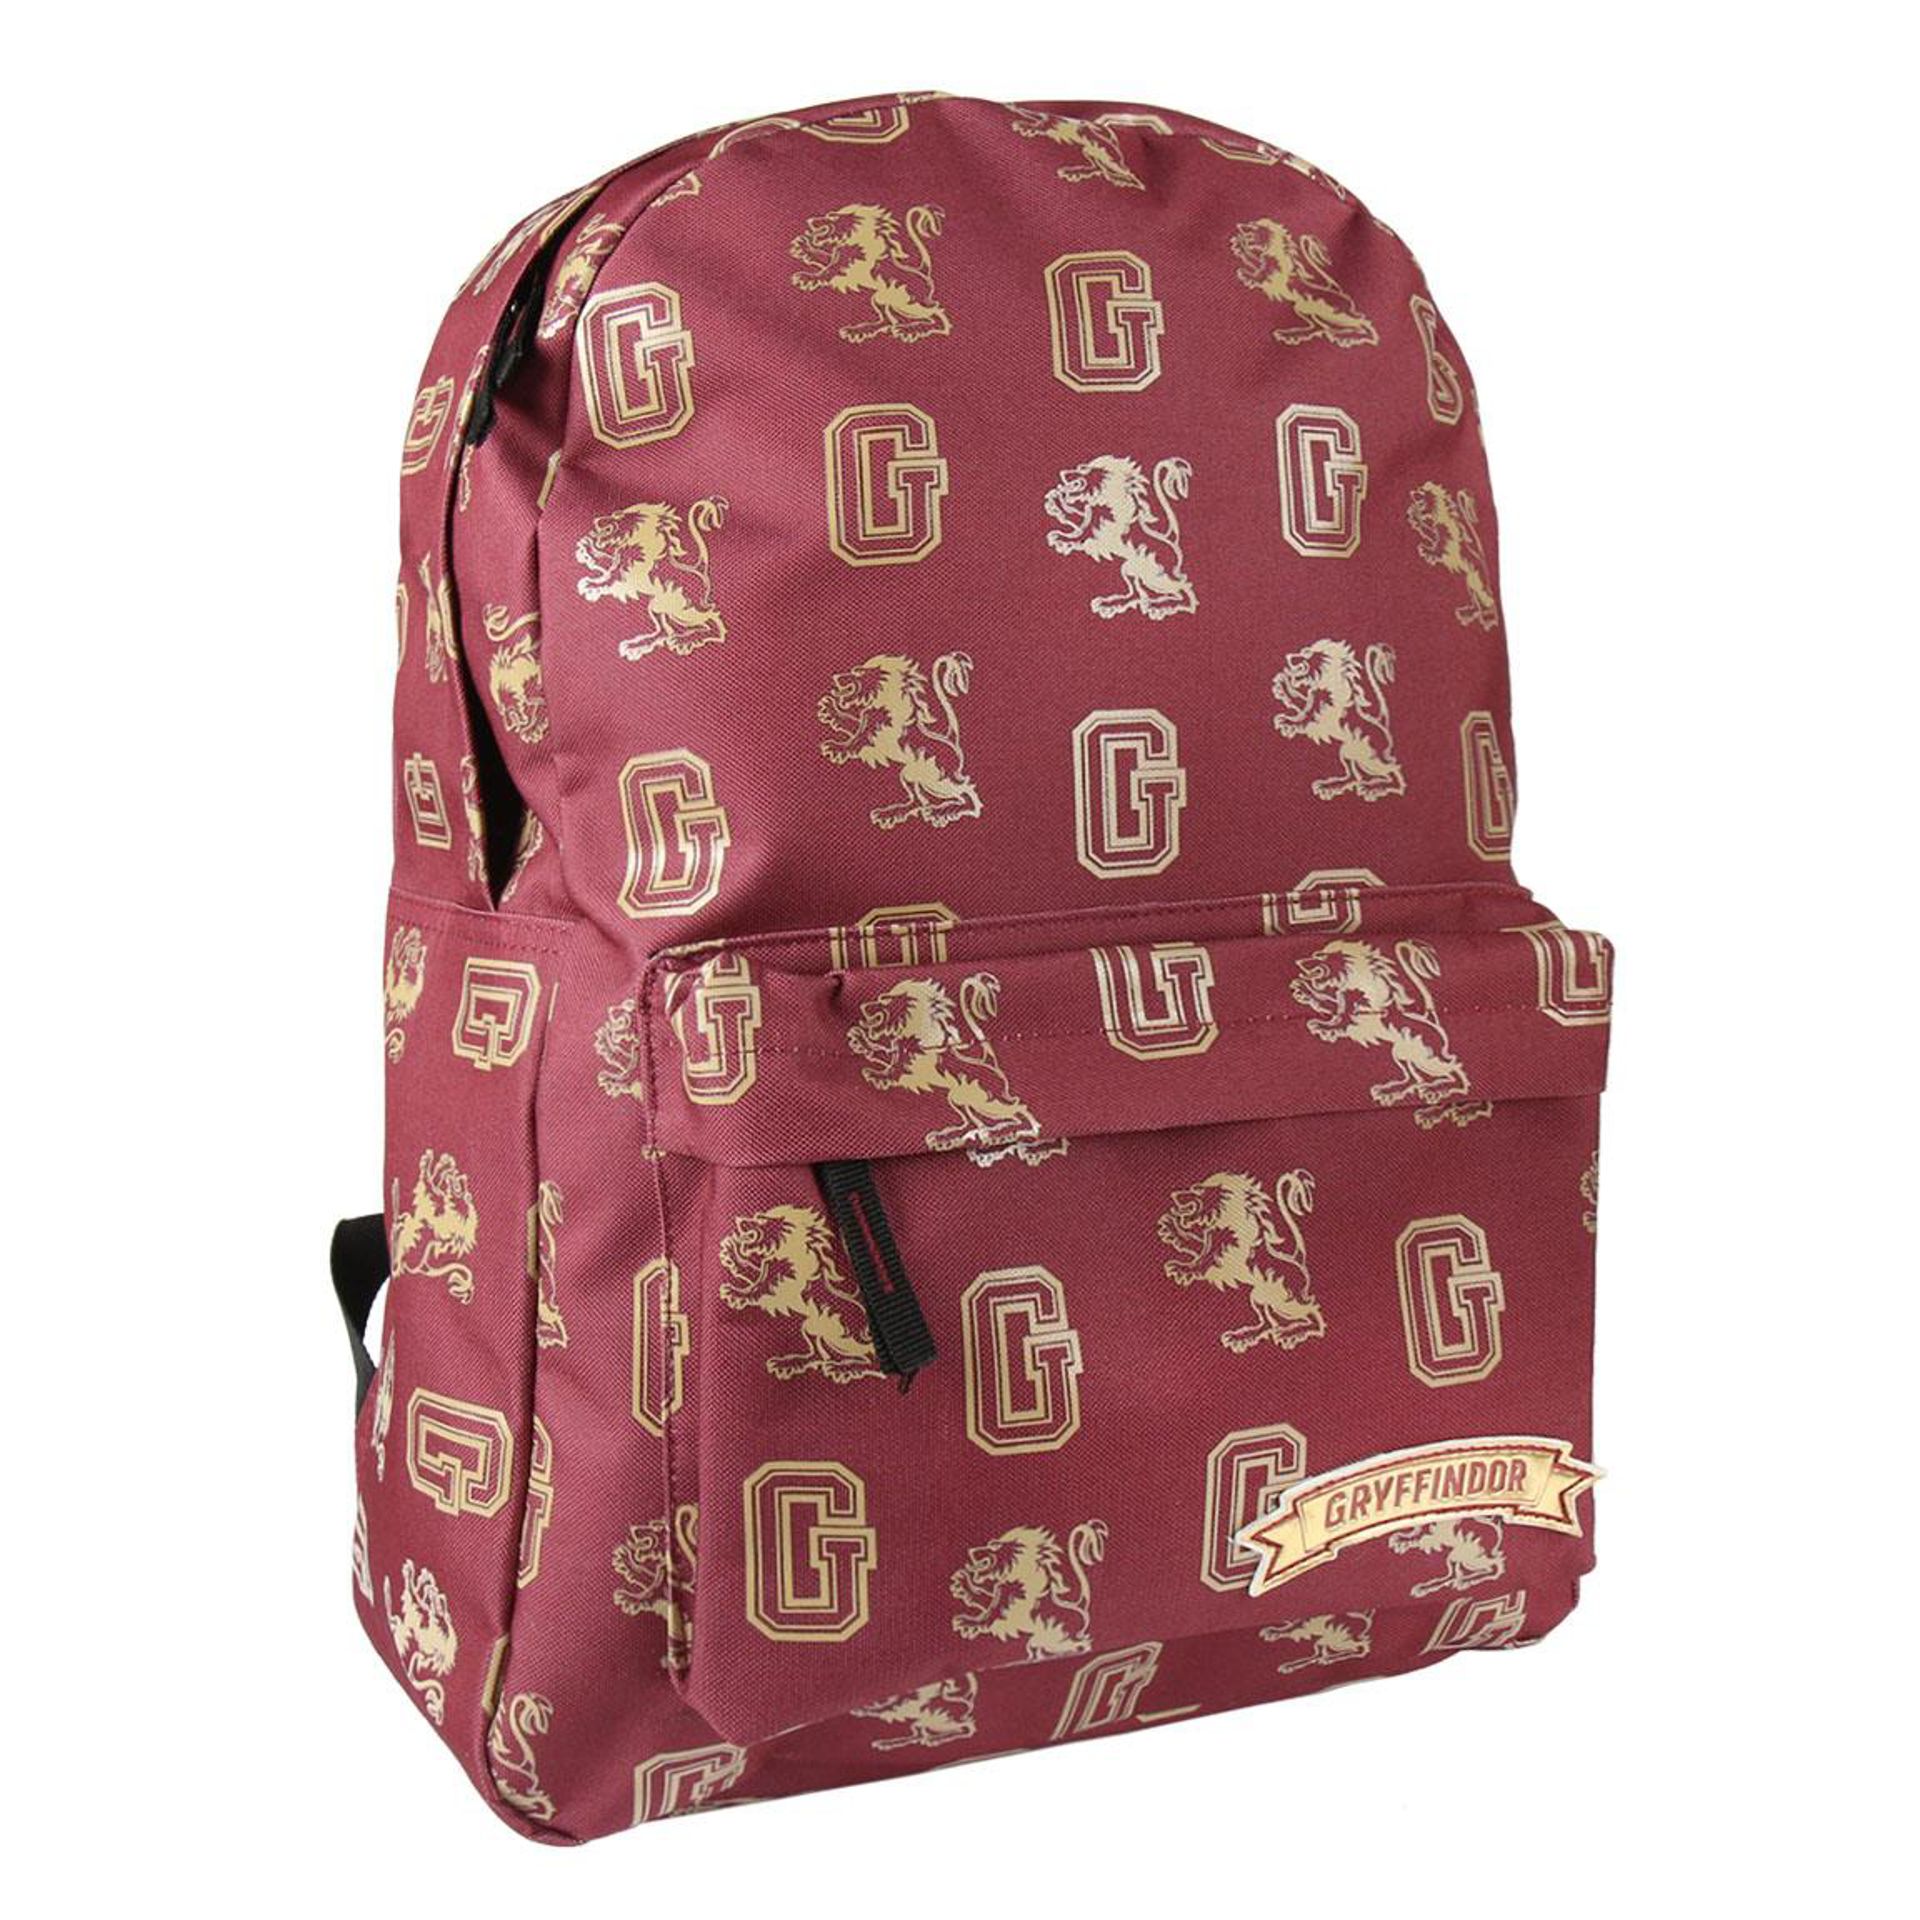 Harry Potter - Gryffindor High School Backpack